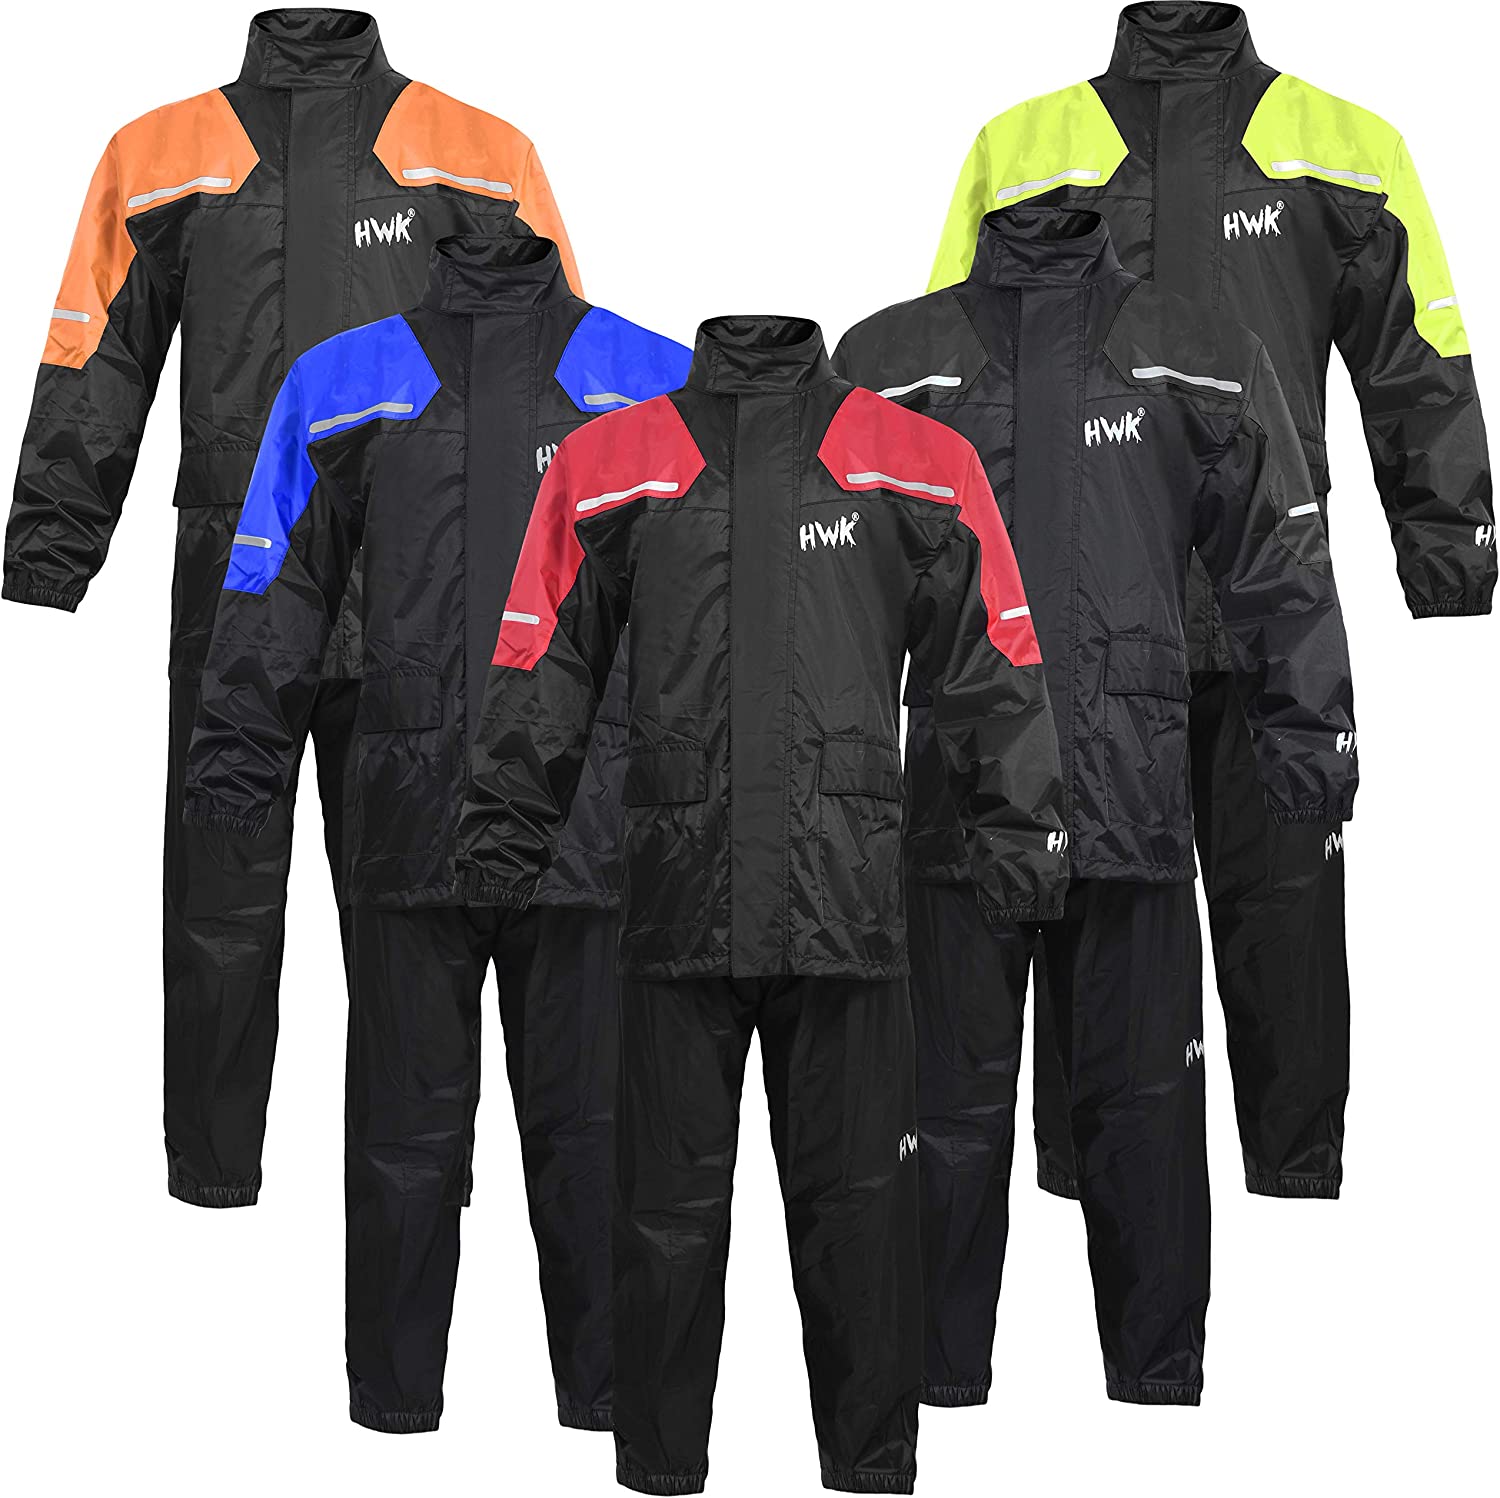 HWK Motorcycle Rain Suit For Men & Women Gear Jackets & Pants Reflective Waterproof Rainsuit (Black, Small)